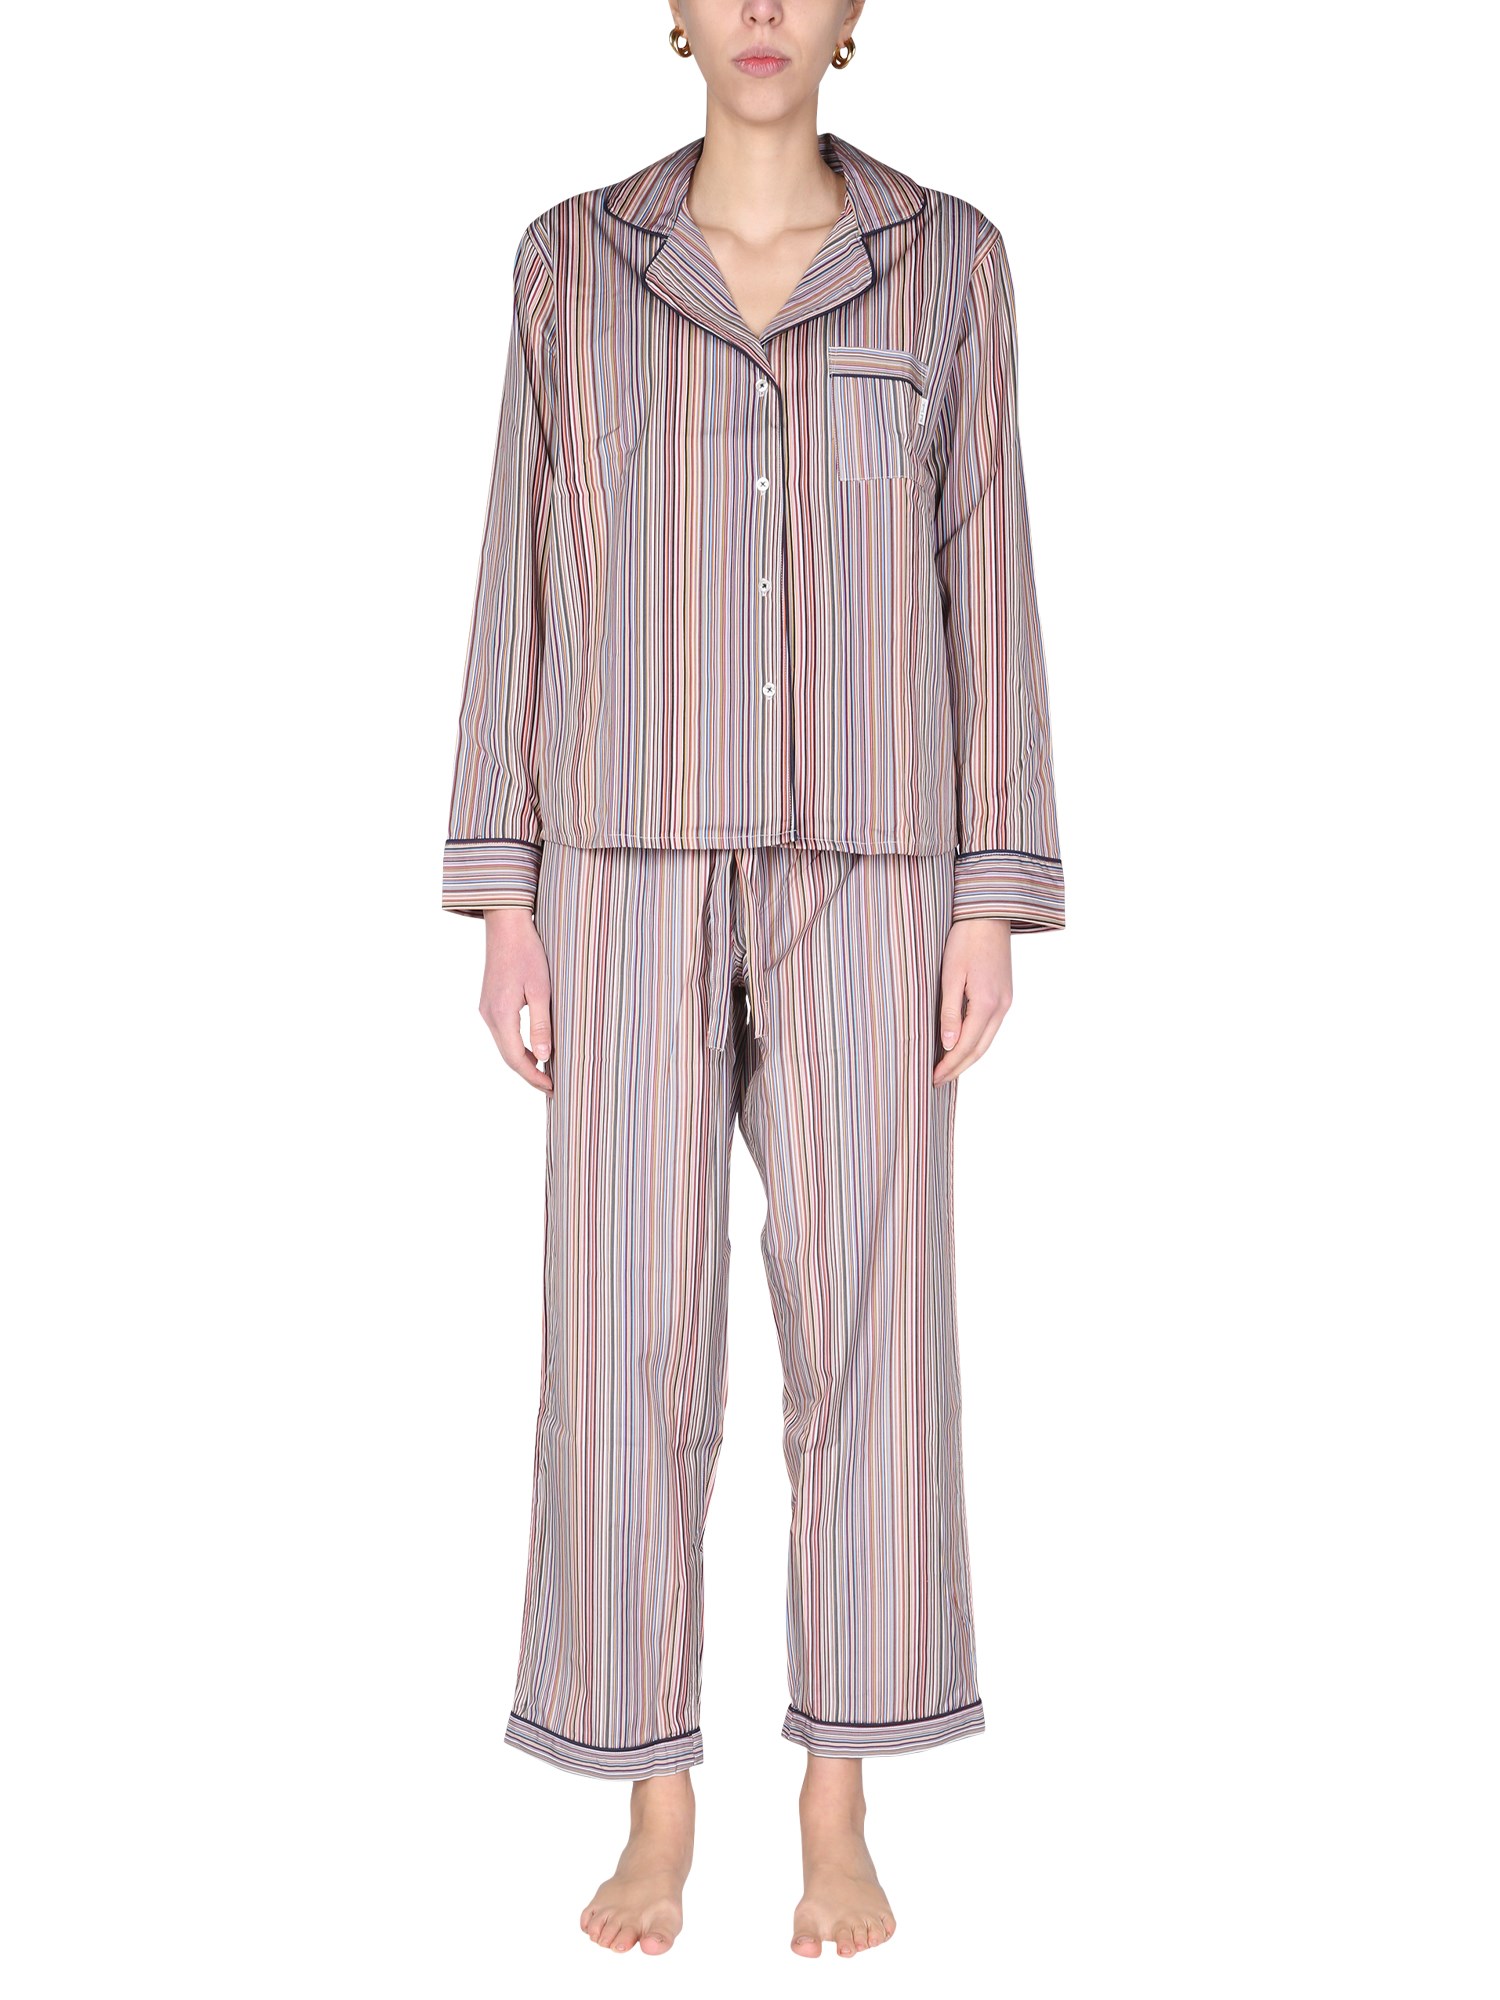 paul smith striped pattern pajamas set